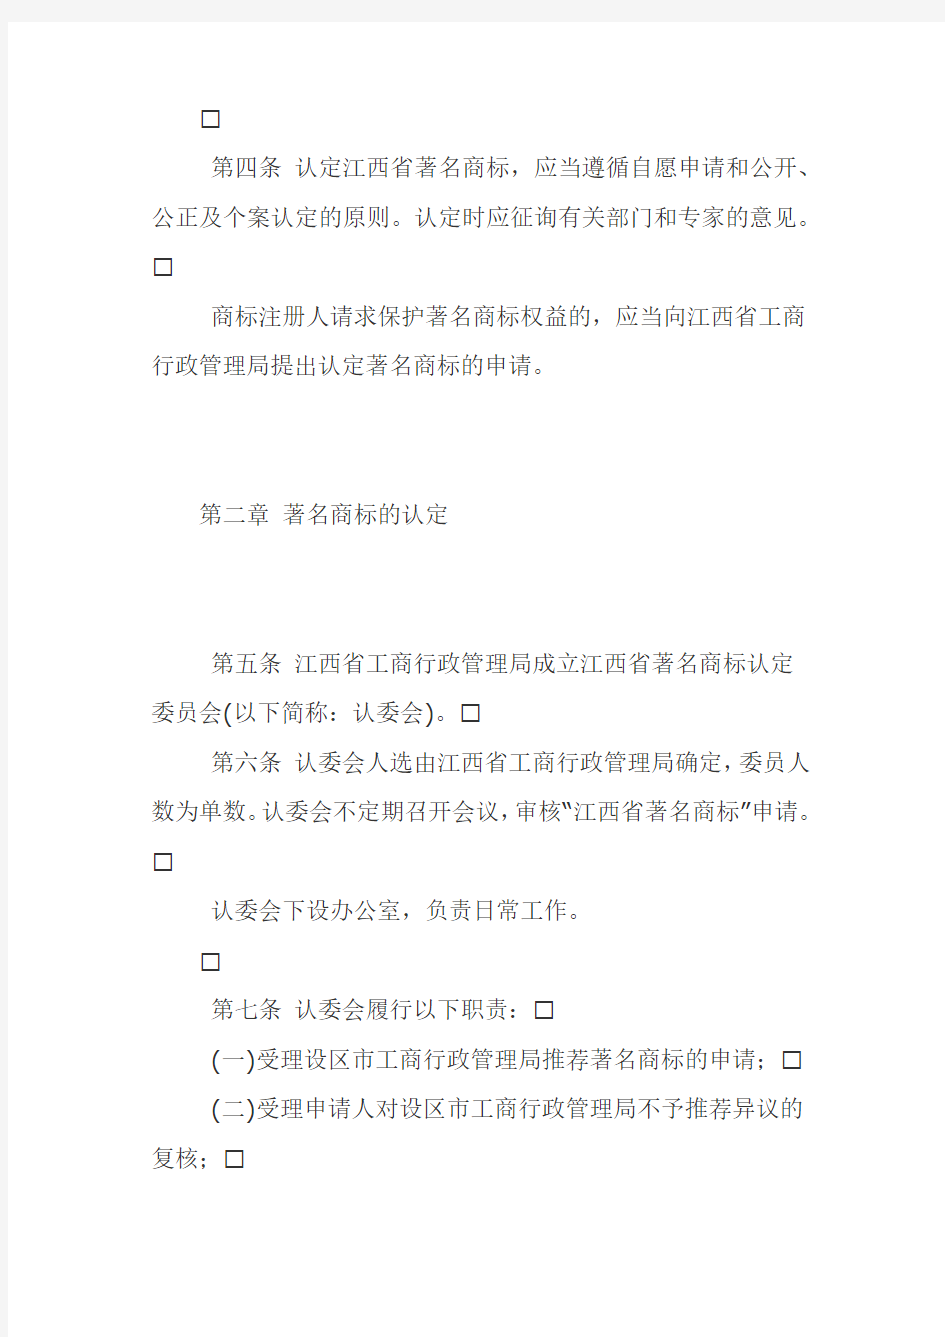 江西省著名商标认定与保护办法